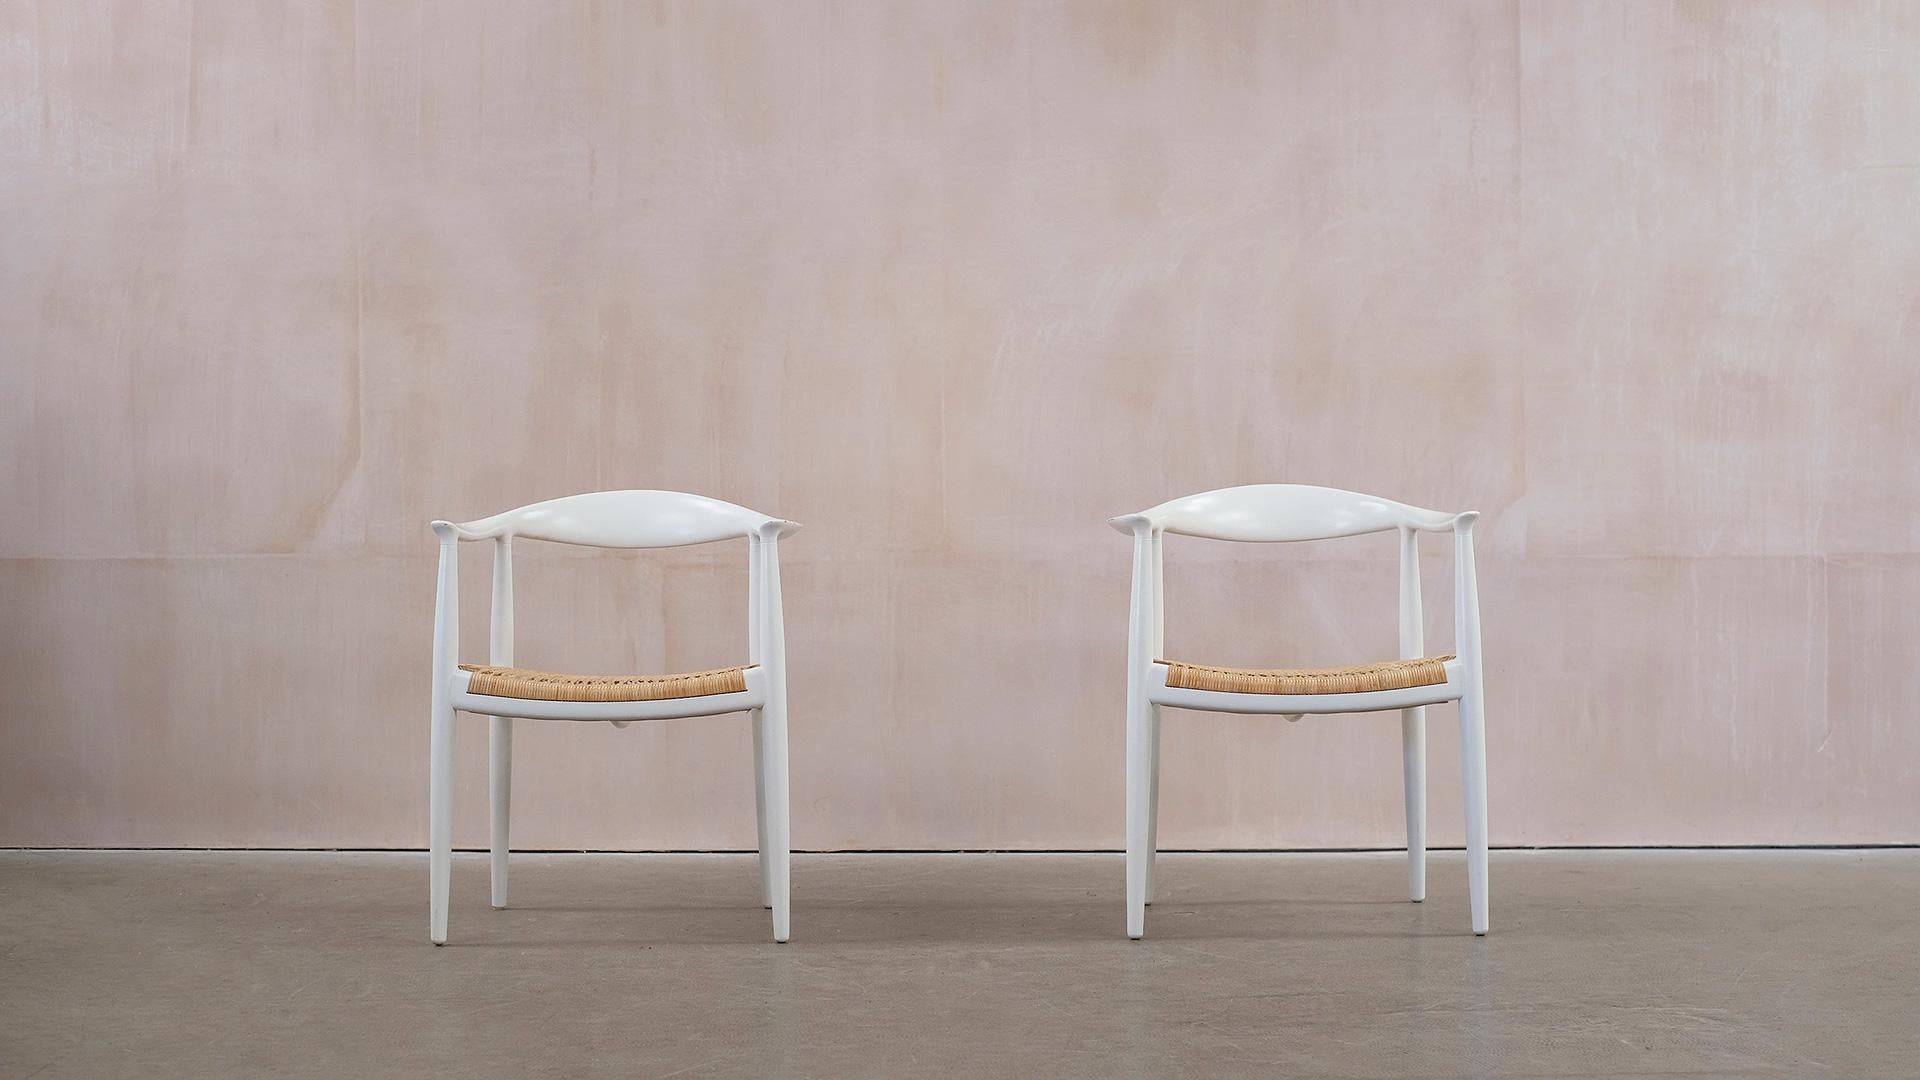 Erstaunliches Paar Hans Wegner Rundstühle PP 501 in 'Special Request' weißer Pigmentlackierung. Diese Stühle wurden 2015 bei PP Mobler mit Genehmigung des Wegner-Nachlasses für die Sonderanfertigung bestellt und sind daher ungewöhnlich und schön.